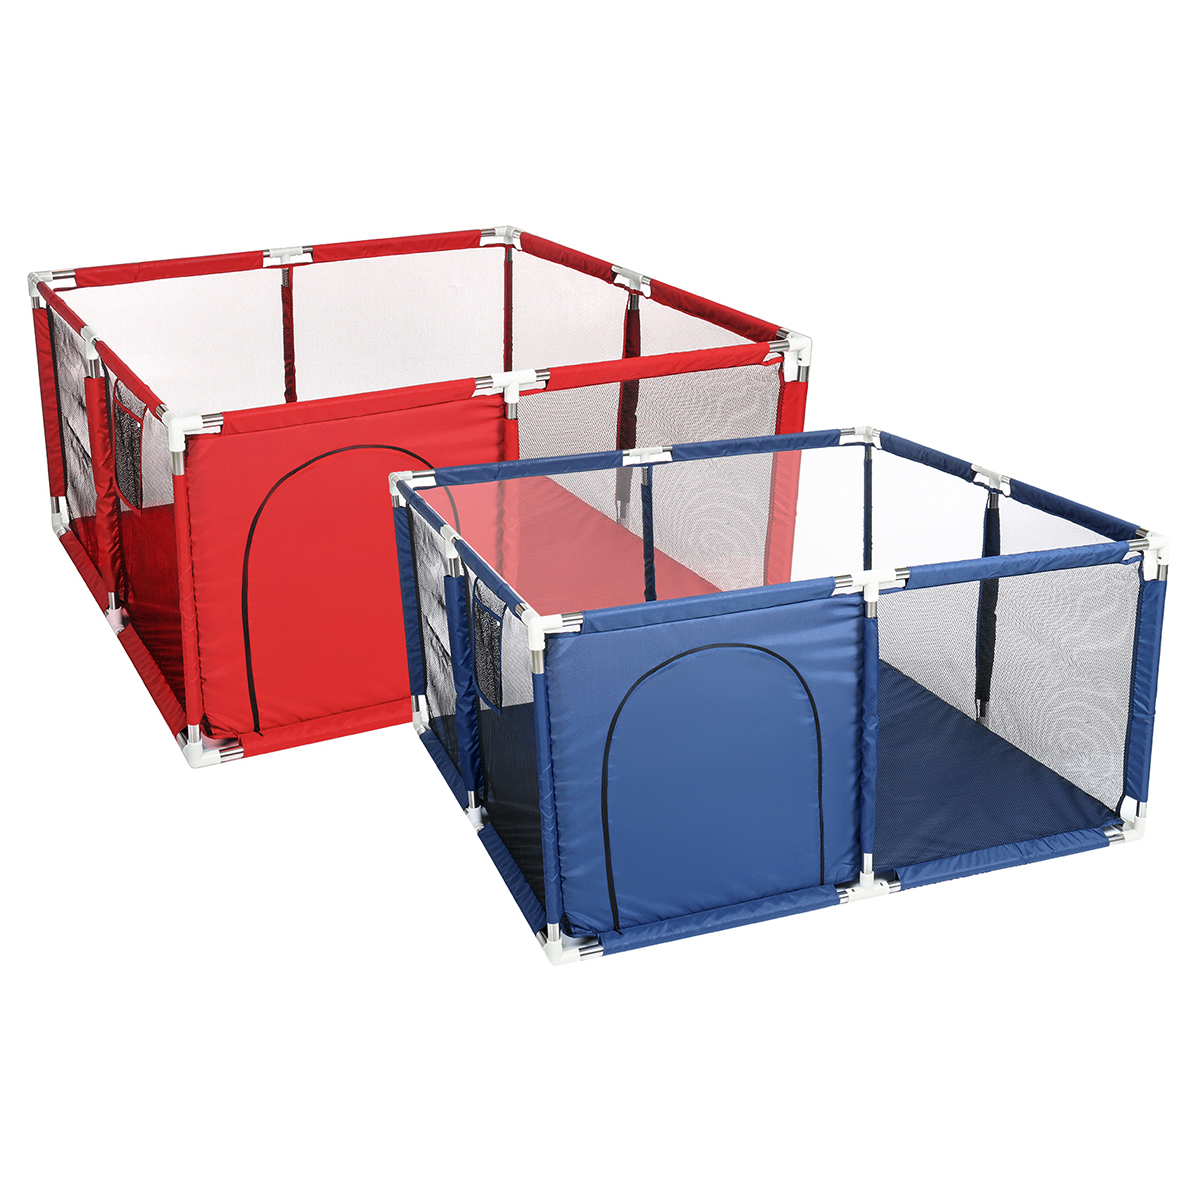 Στα 30.99 € από αποθήκη Τσεχίας | Children Game Playpen Baby Barrier Fence Pit Pool Playground Indoor Basketball